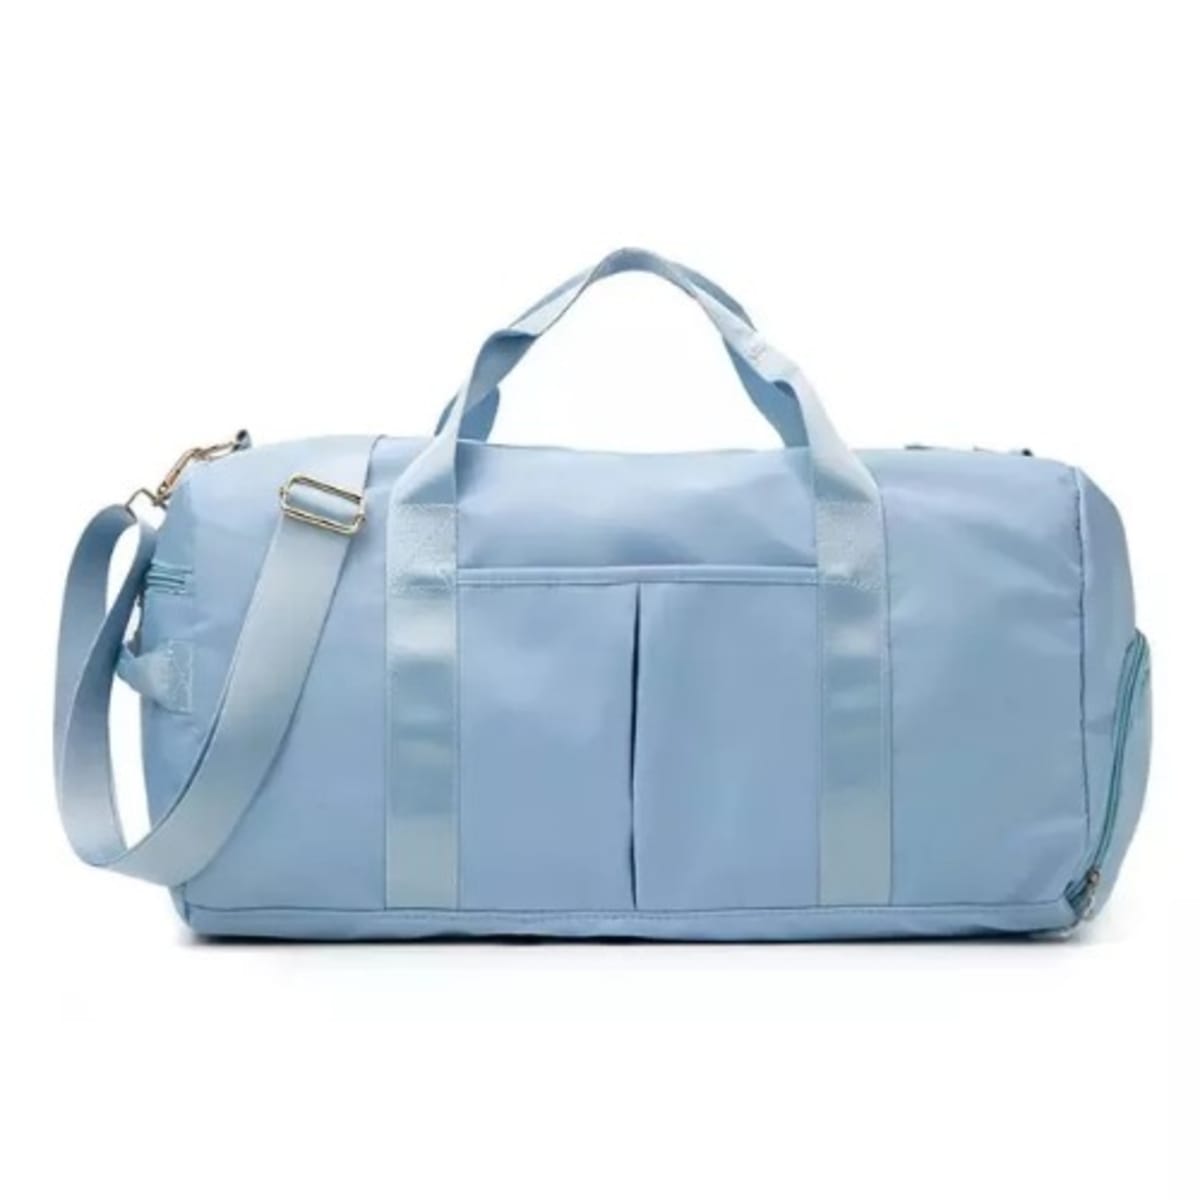 Gym - Travel Duffel Bag - Db-4 - Skye Blue